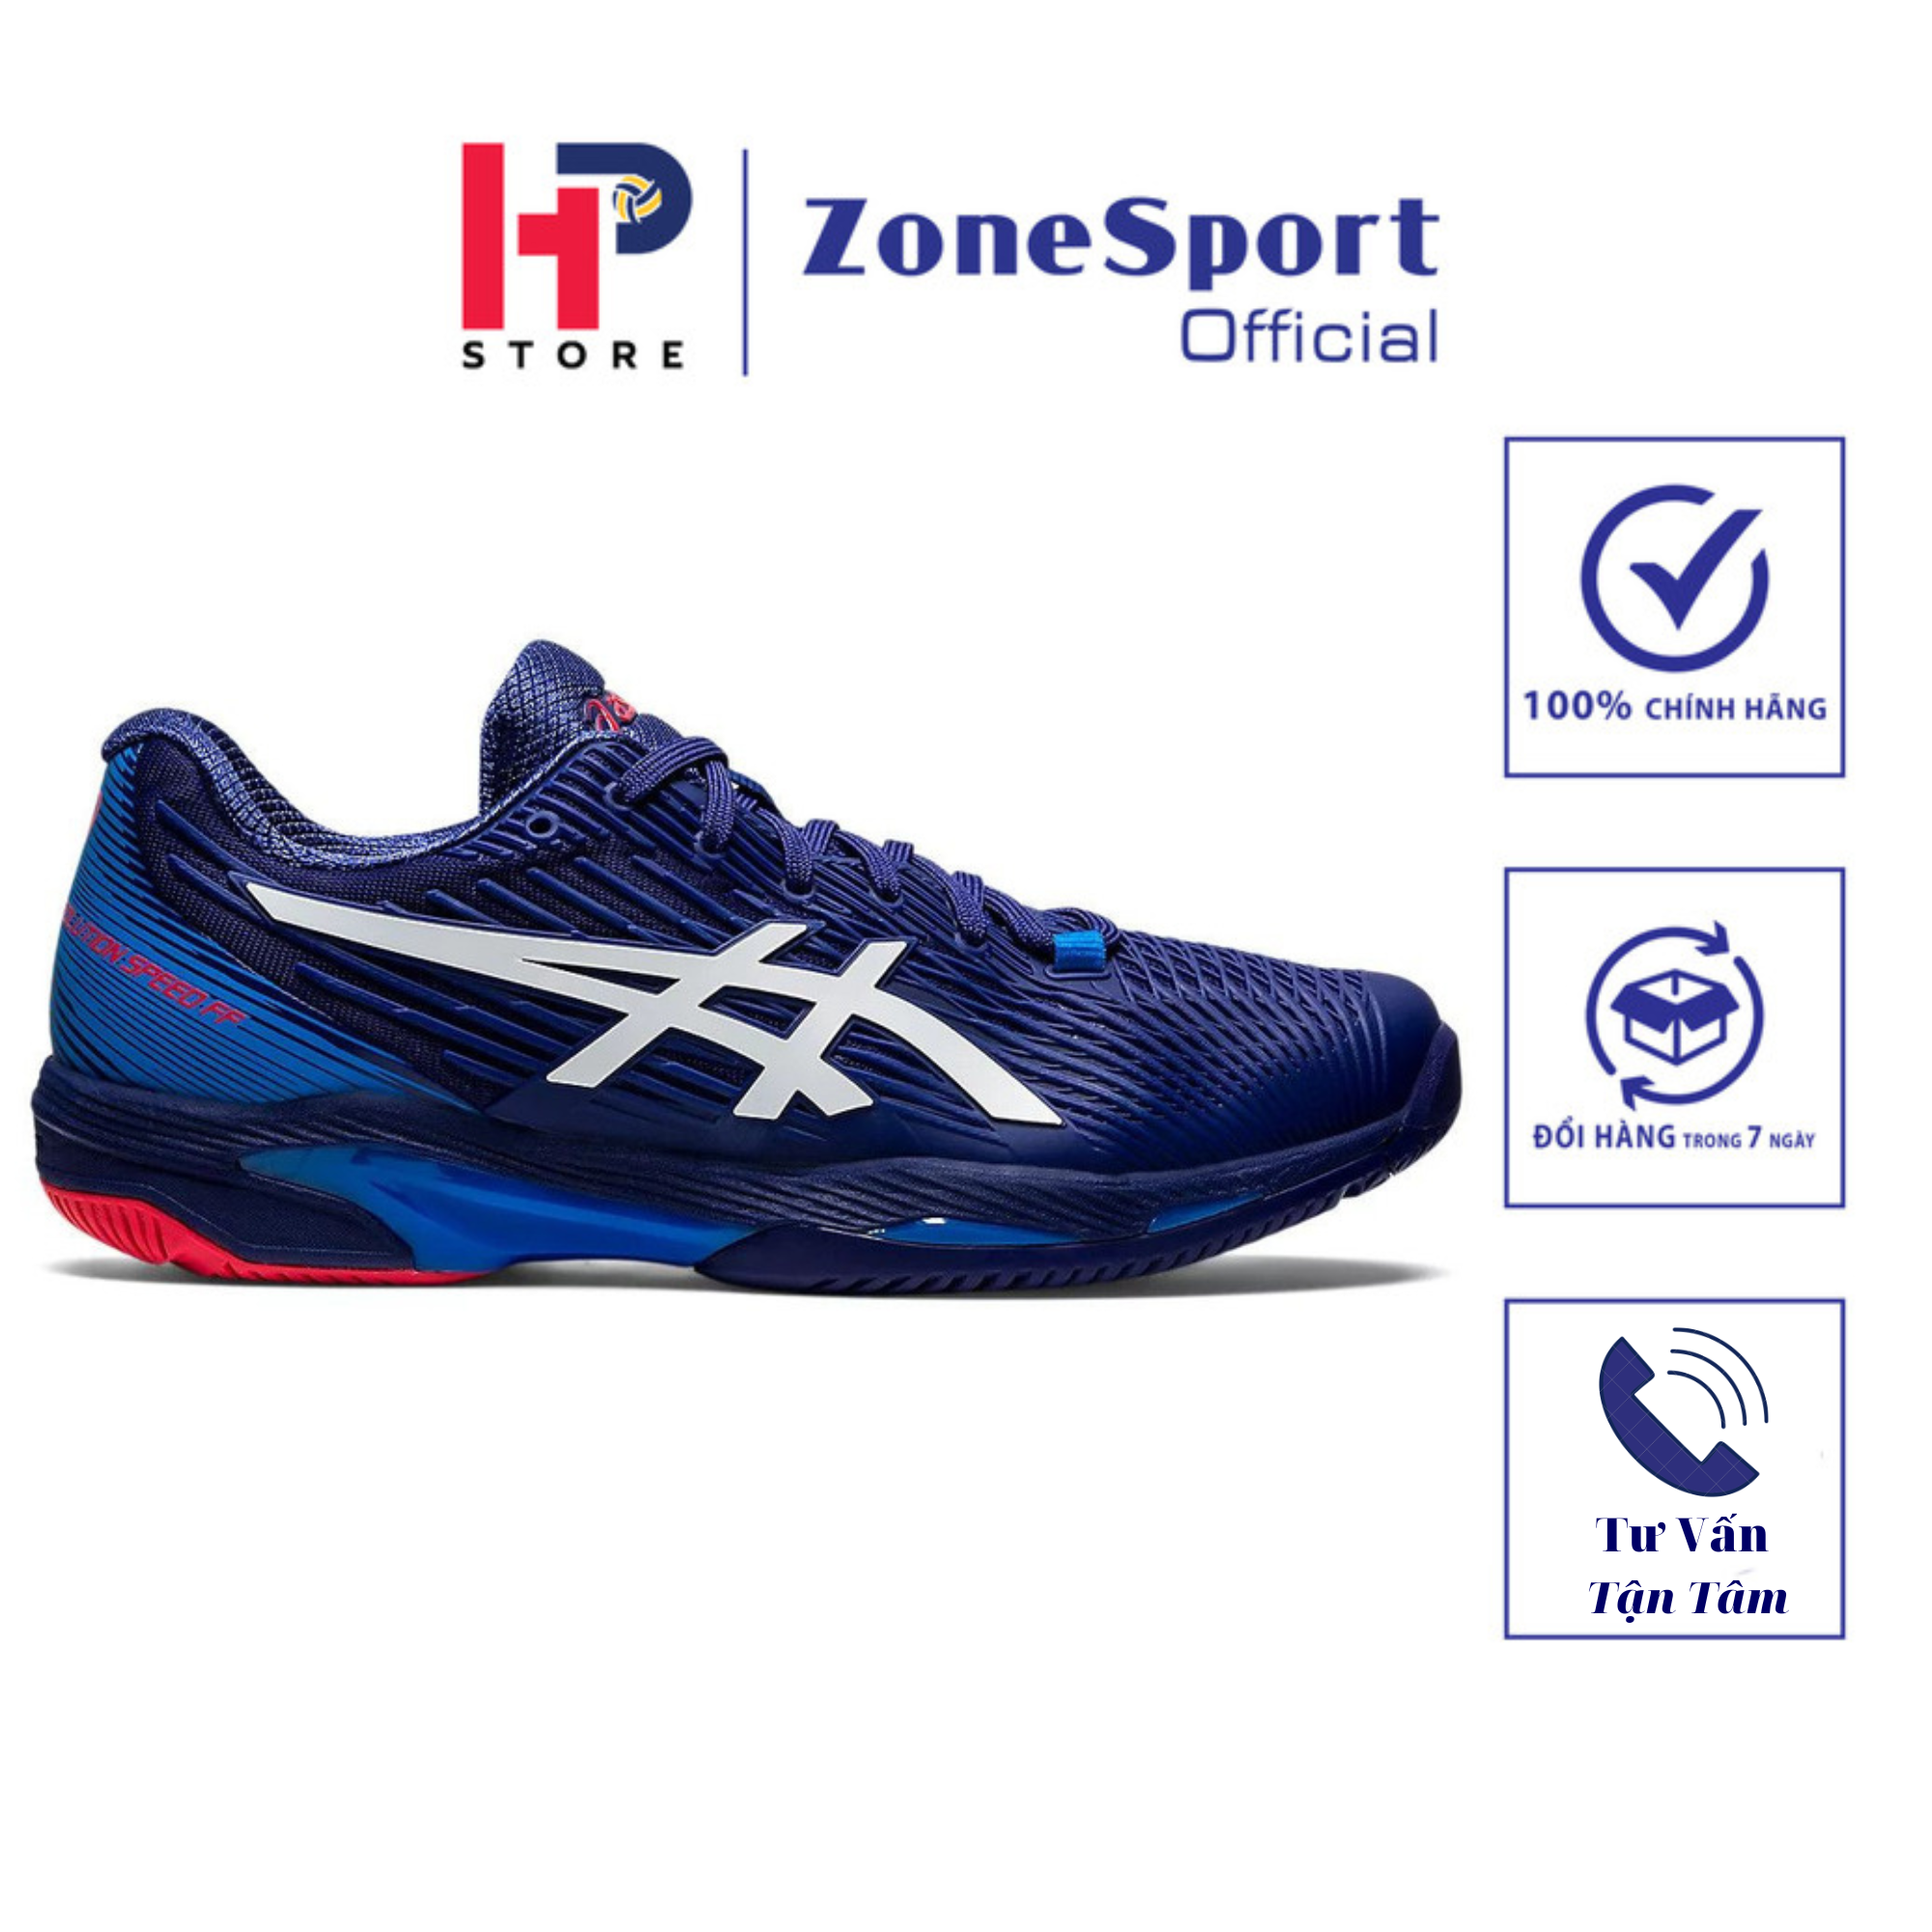 Giày Asics Solution Speed FF 2 Xanh Đen - Giày Chuyên Tennis, Cầu Lông, Bóng Chuyền trọng lượng nhẹ thiết kế độc đáo